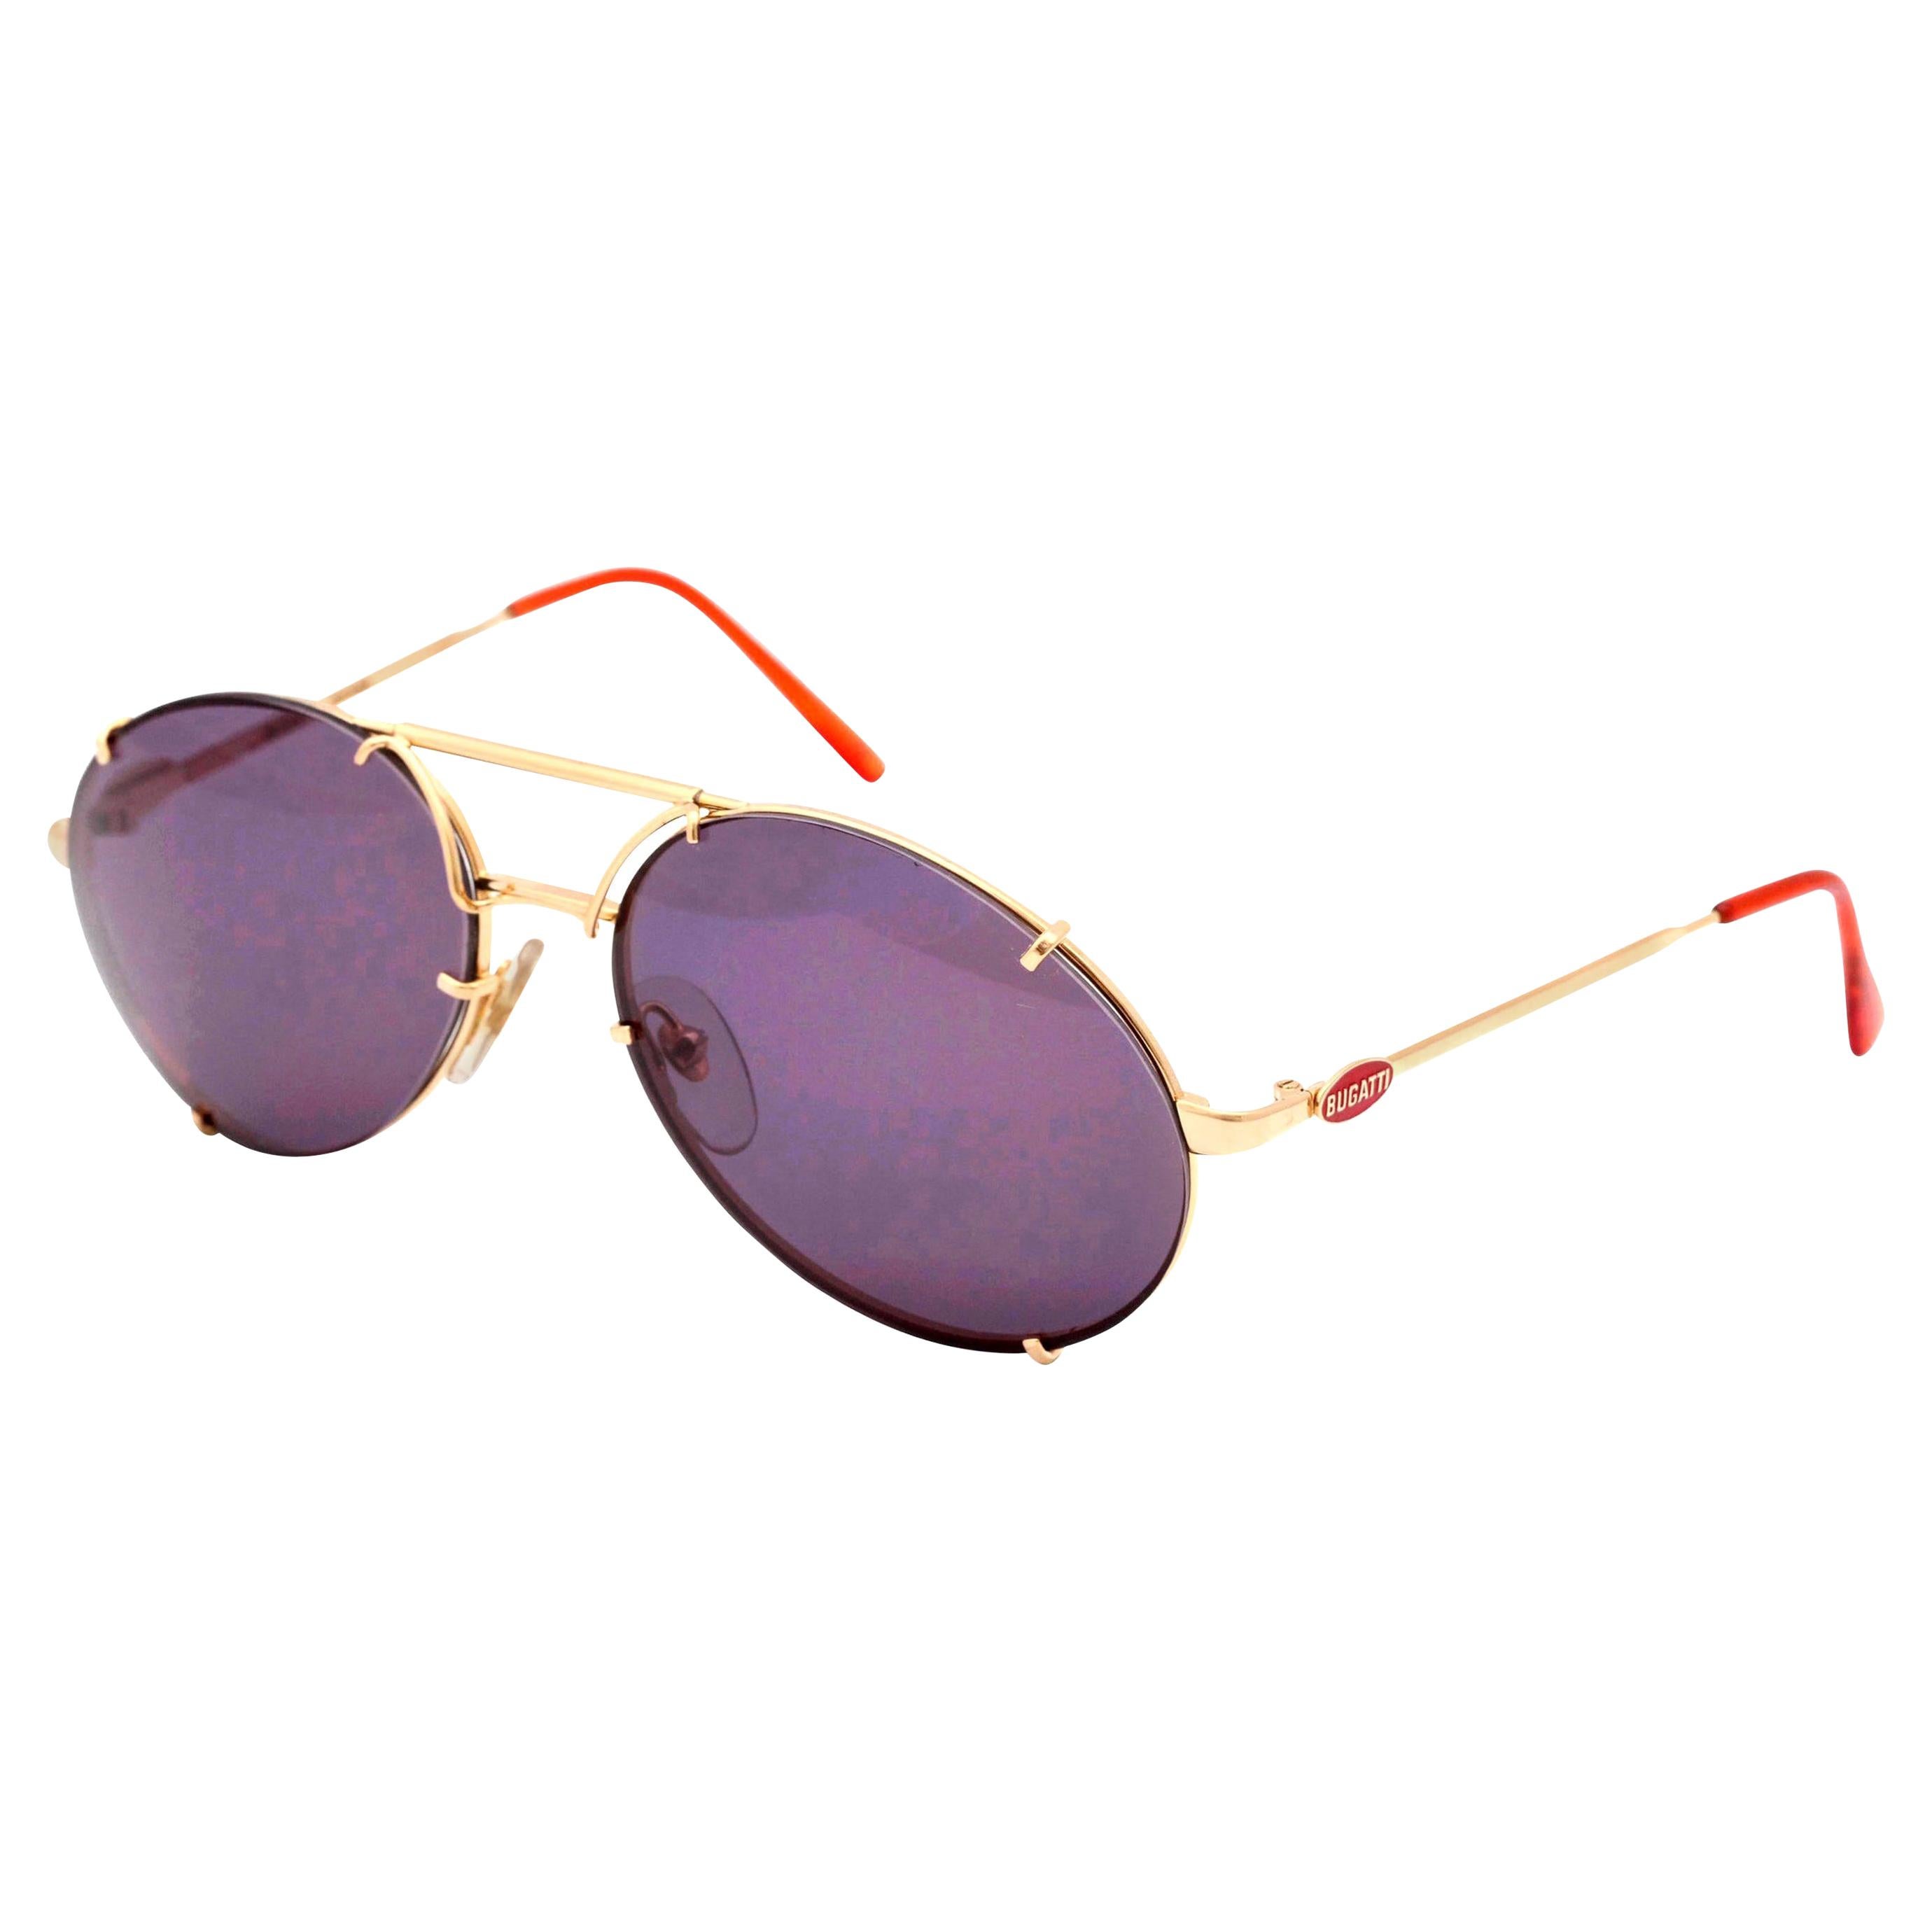 Bugatti Sunglasses - For Sale on 1stDibs | bugatti sunglasses for sale,  bugatti zonnebril, bugatti glasses price